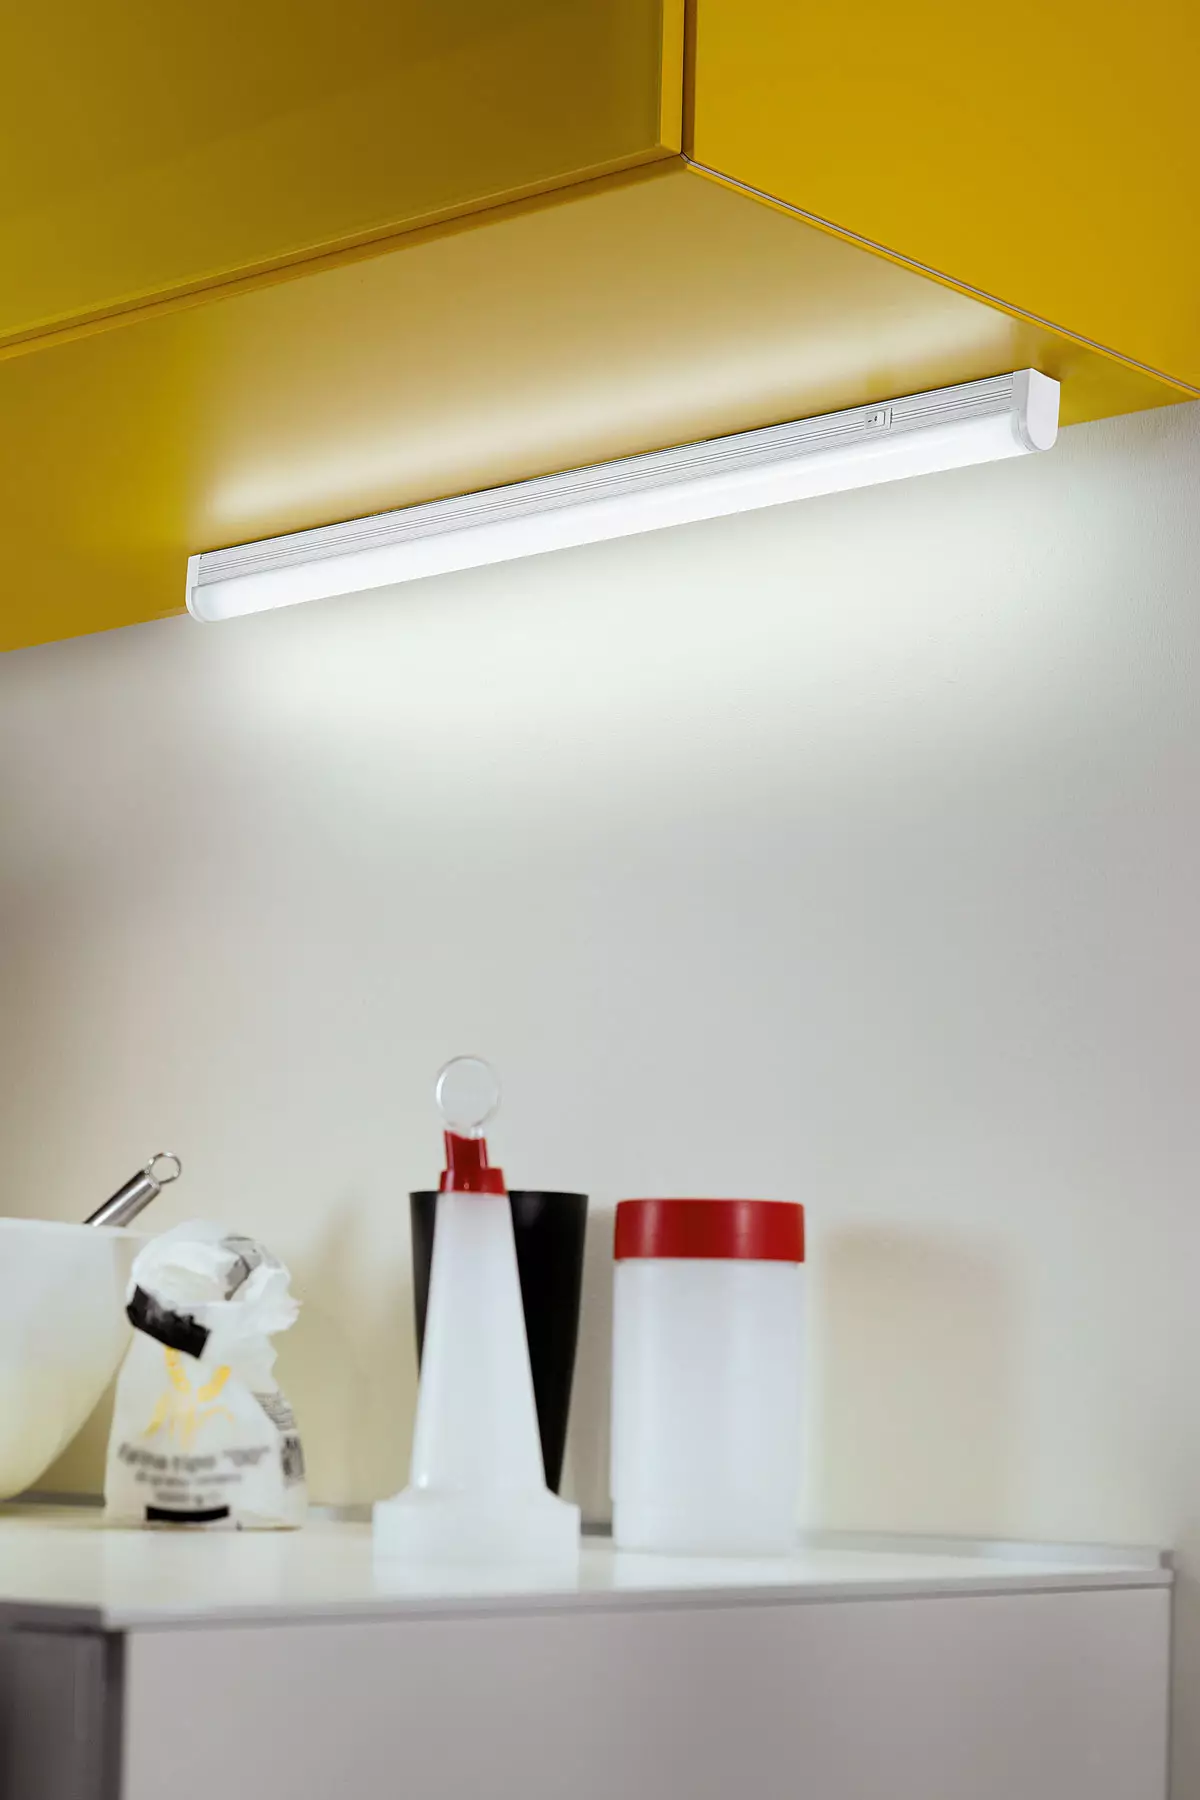 Podświetlenie LED pod szafkami kuchennymi (80 zdjęć): Przegląd nad głową, dołączonych i innych lamp kuchennych z diodami LED. Jakie lampy lepiej wybierają? 21002_35